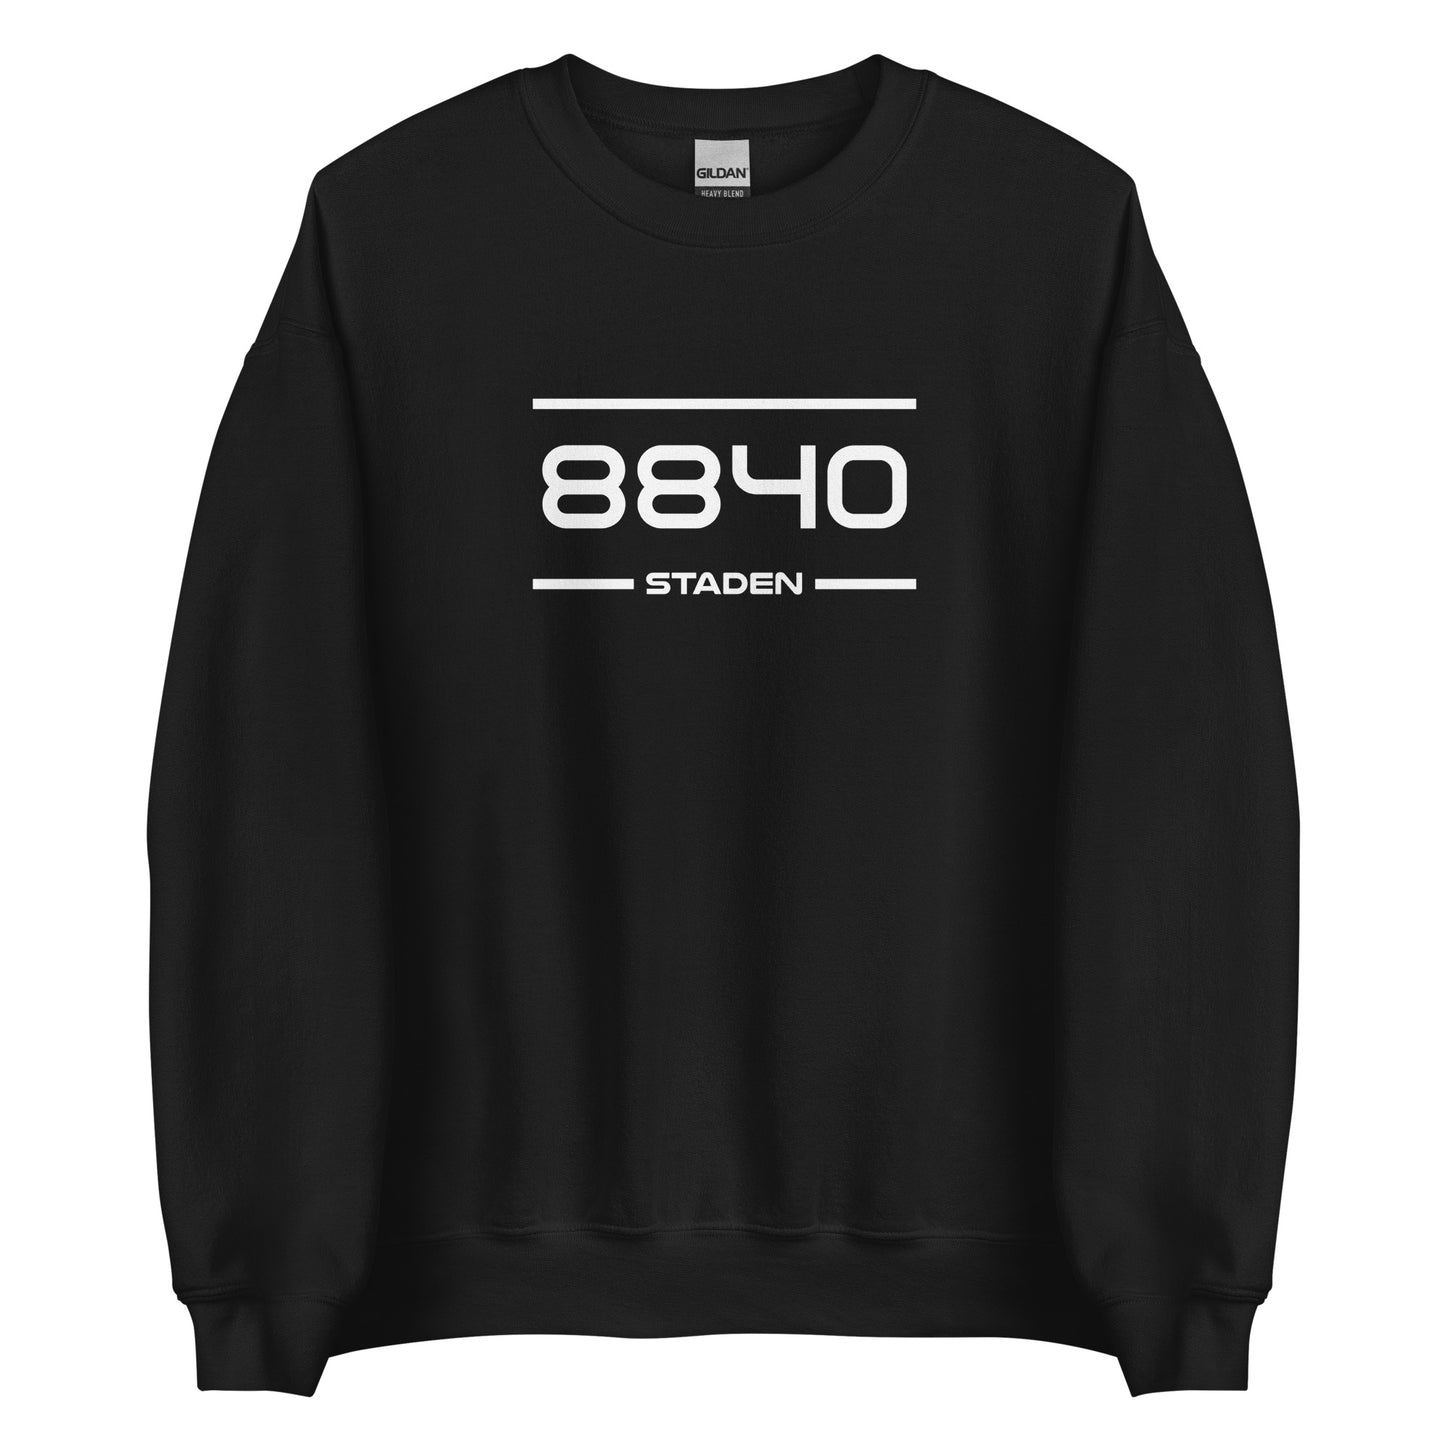 Sweater - 8840 - Staden (M/V)